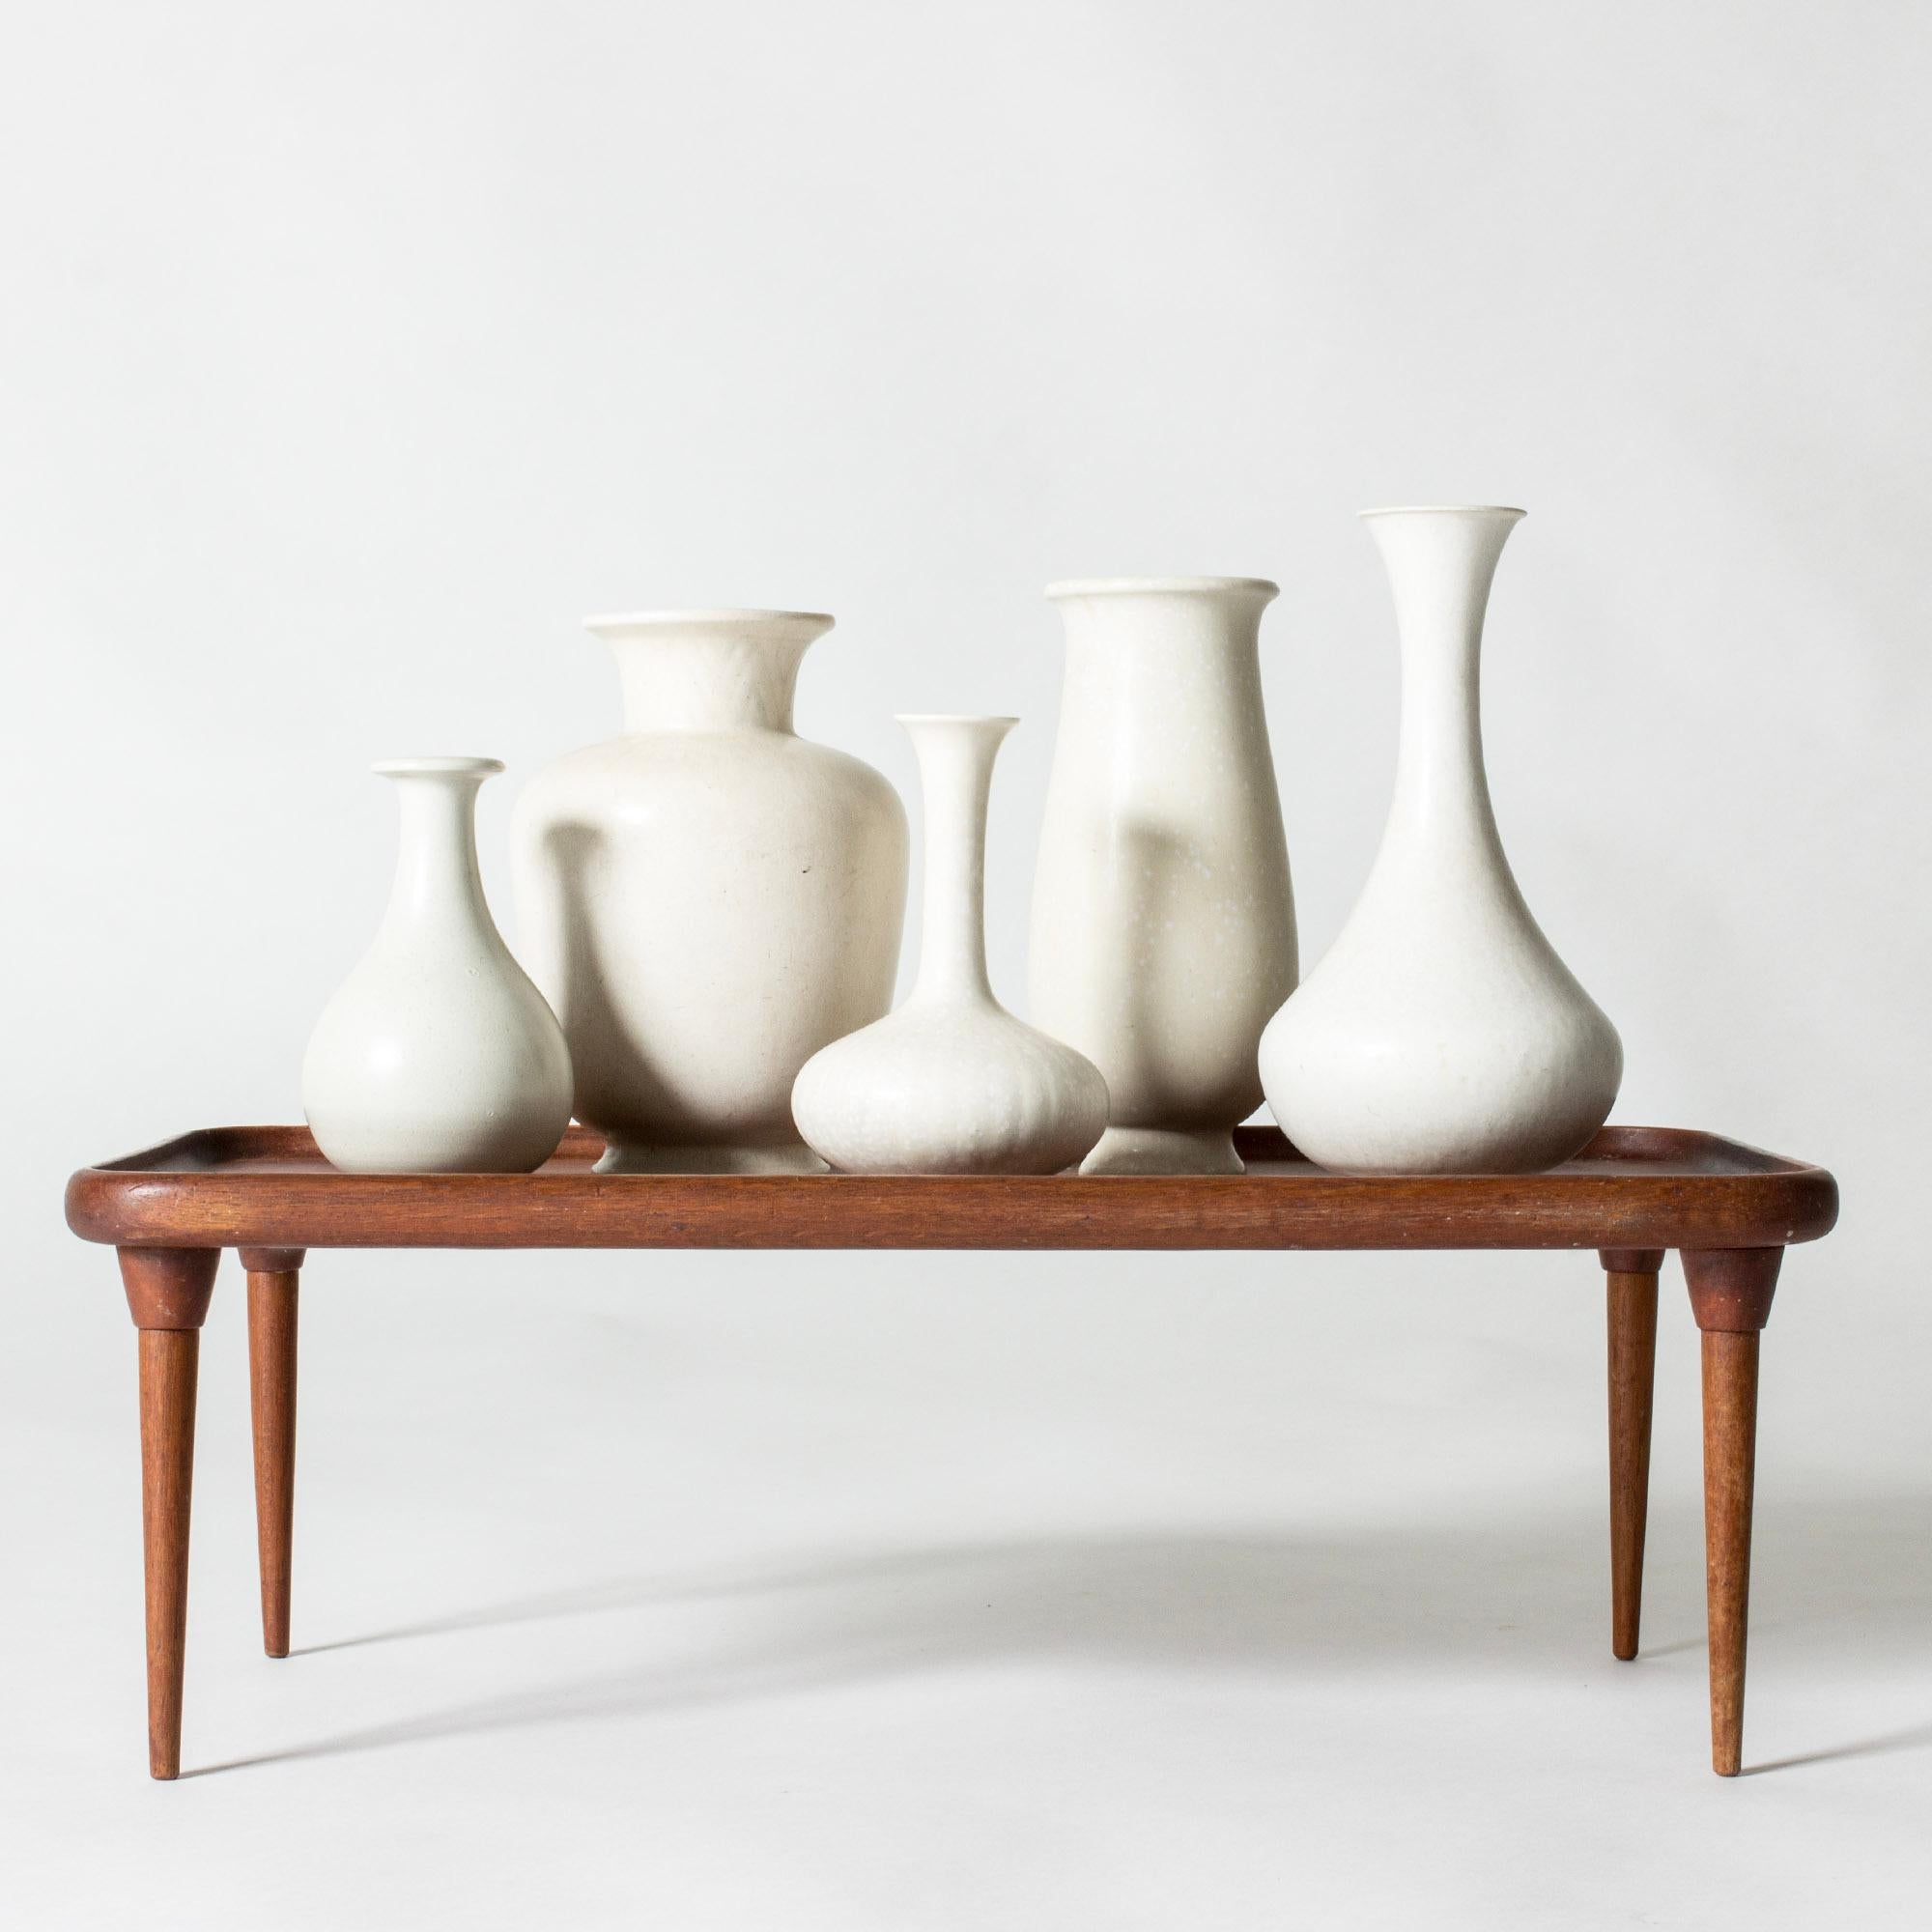 Ensemble de cinq vases en grès de Gunnar Nylund, dans une variété de formes et de tailles élégantes et courbes. Le tout est émaillé d'un beau blanc coquille d'œuf.

Hauteur 14/15,5/19/20/22,5 cm, Diamètre 8-13,4 cm.

Gunnar Nylund a été l'un des